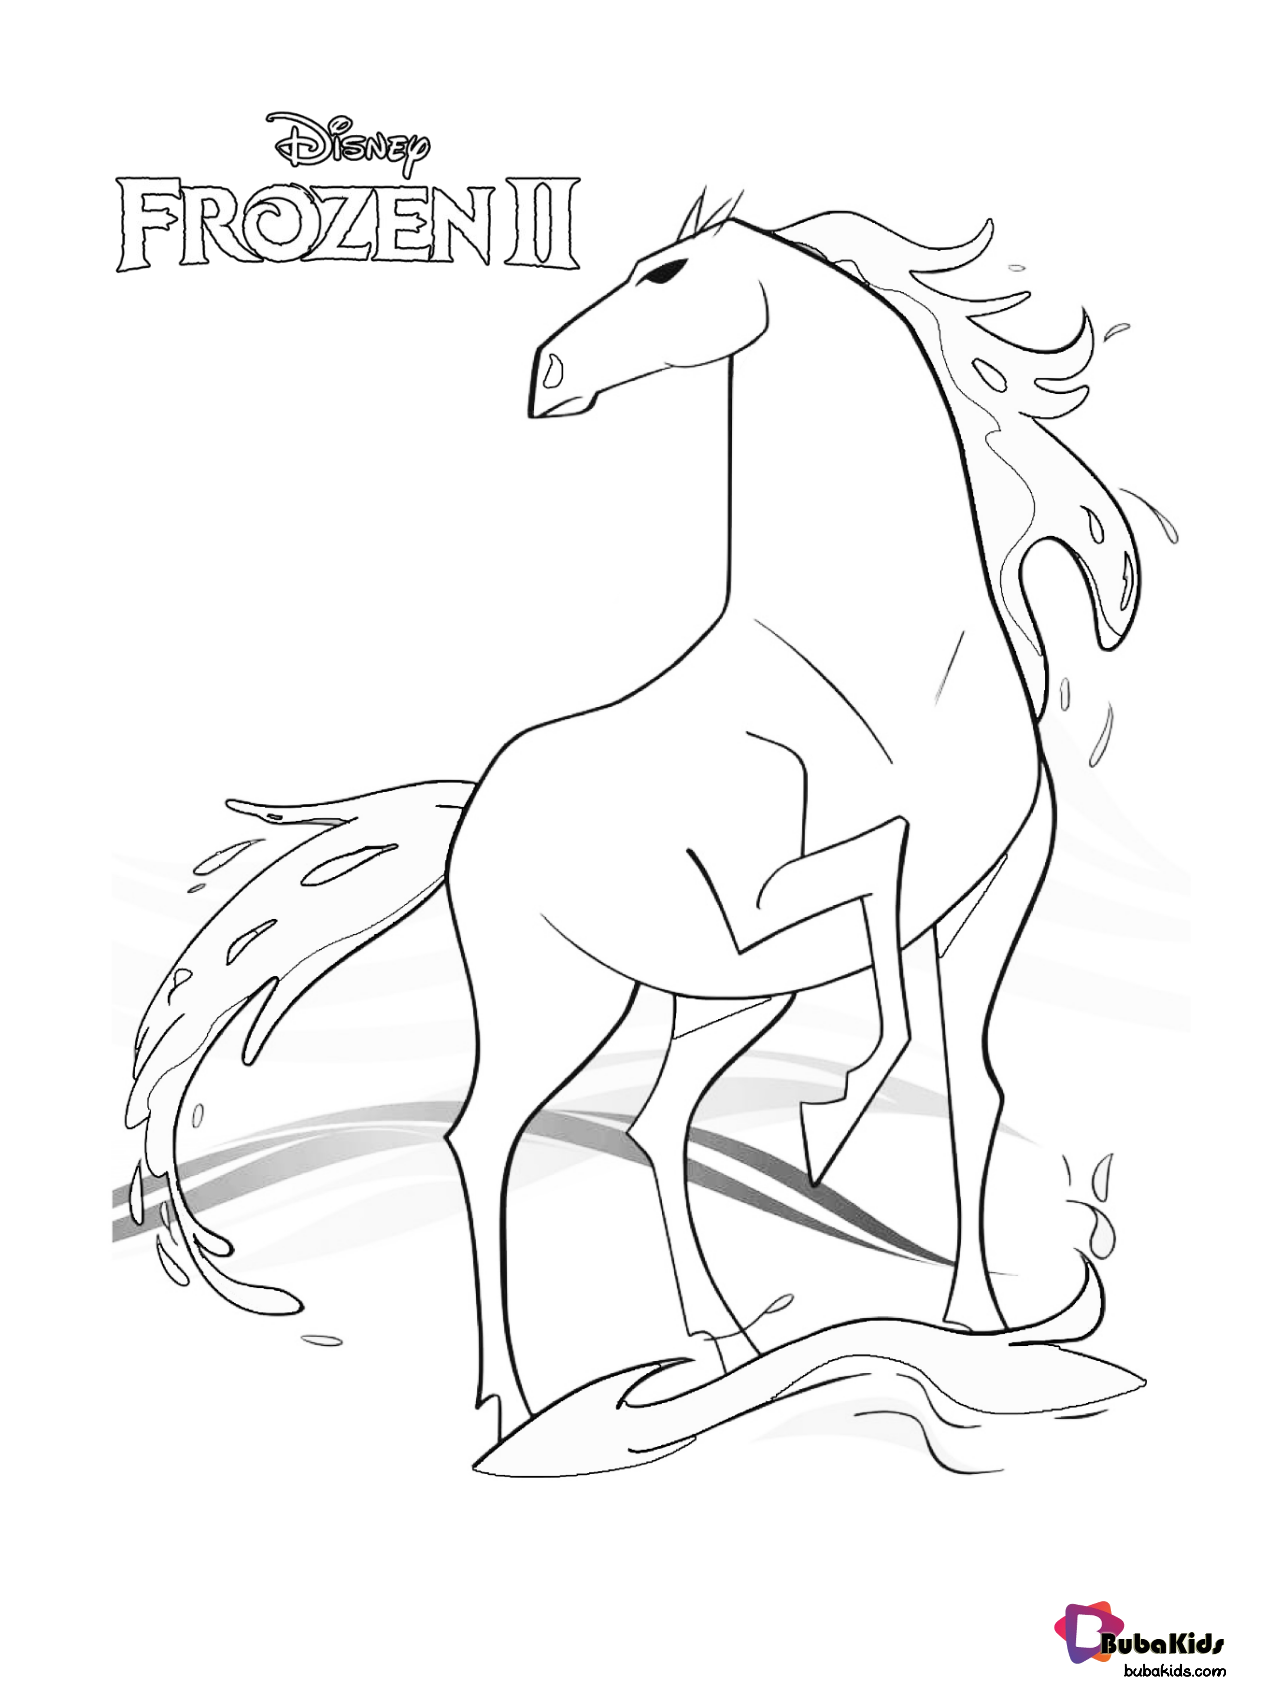 Frozen 2 Nokk the magic horse coloring page. bubakids.com, Frozen ...